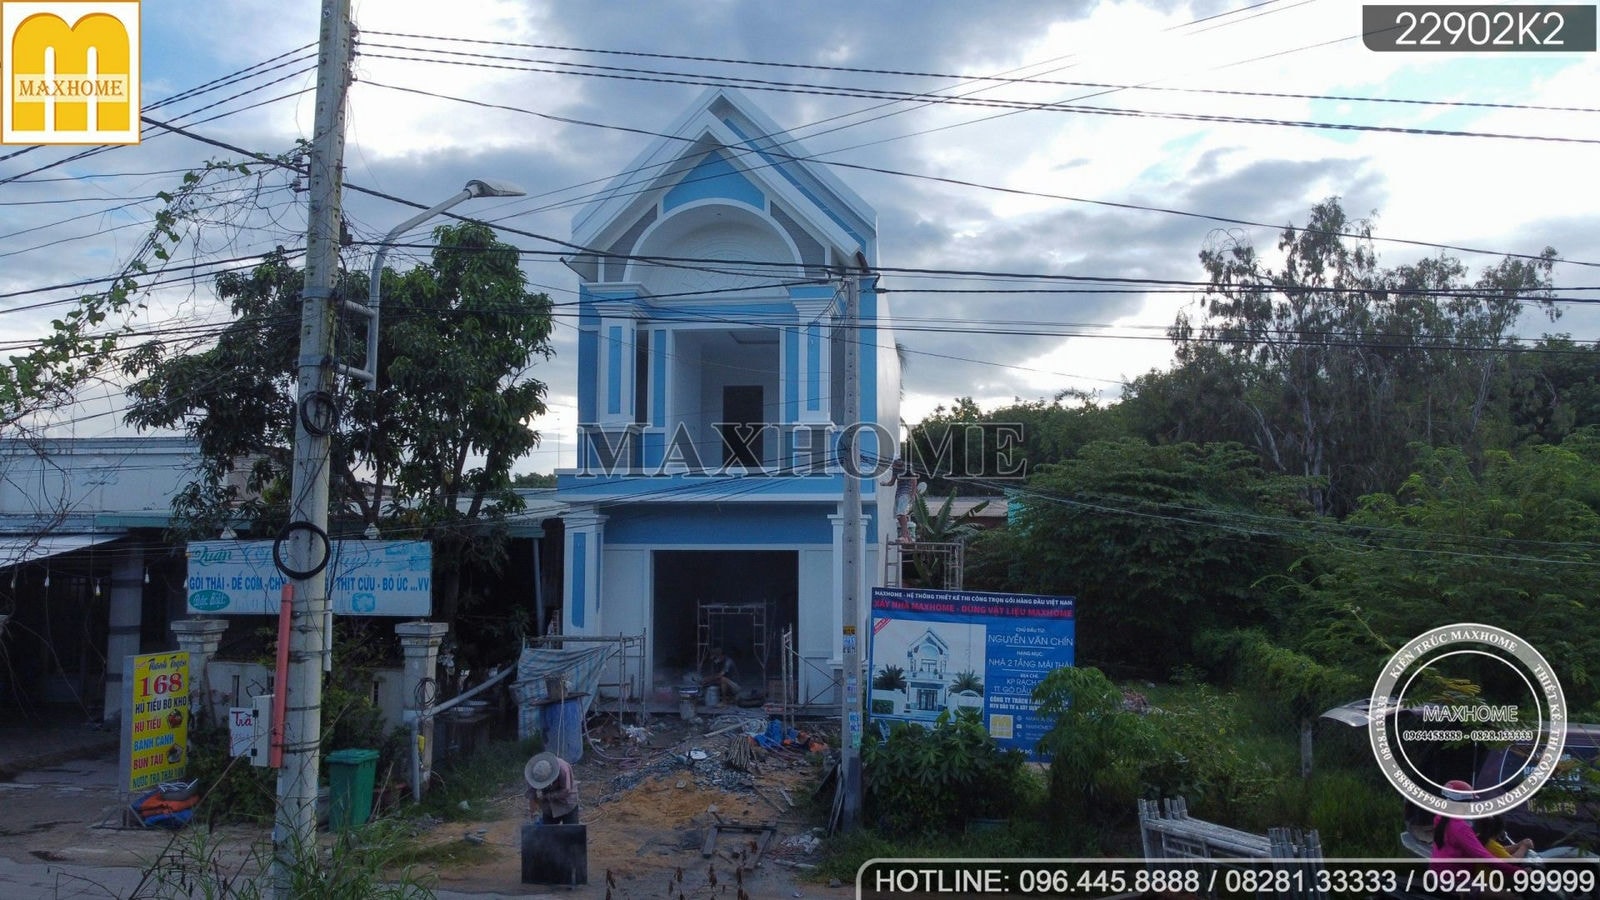 Ghé thăm tiến độ thi công nhà phố mái Thái 2 tầng ĐẸP KHÔNG CHỖ CHÊ | MH02326